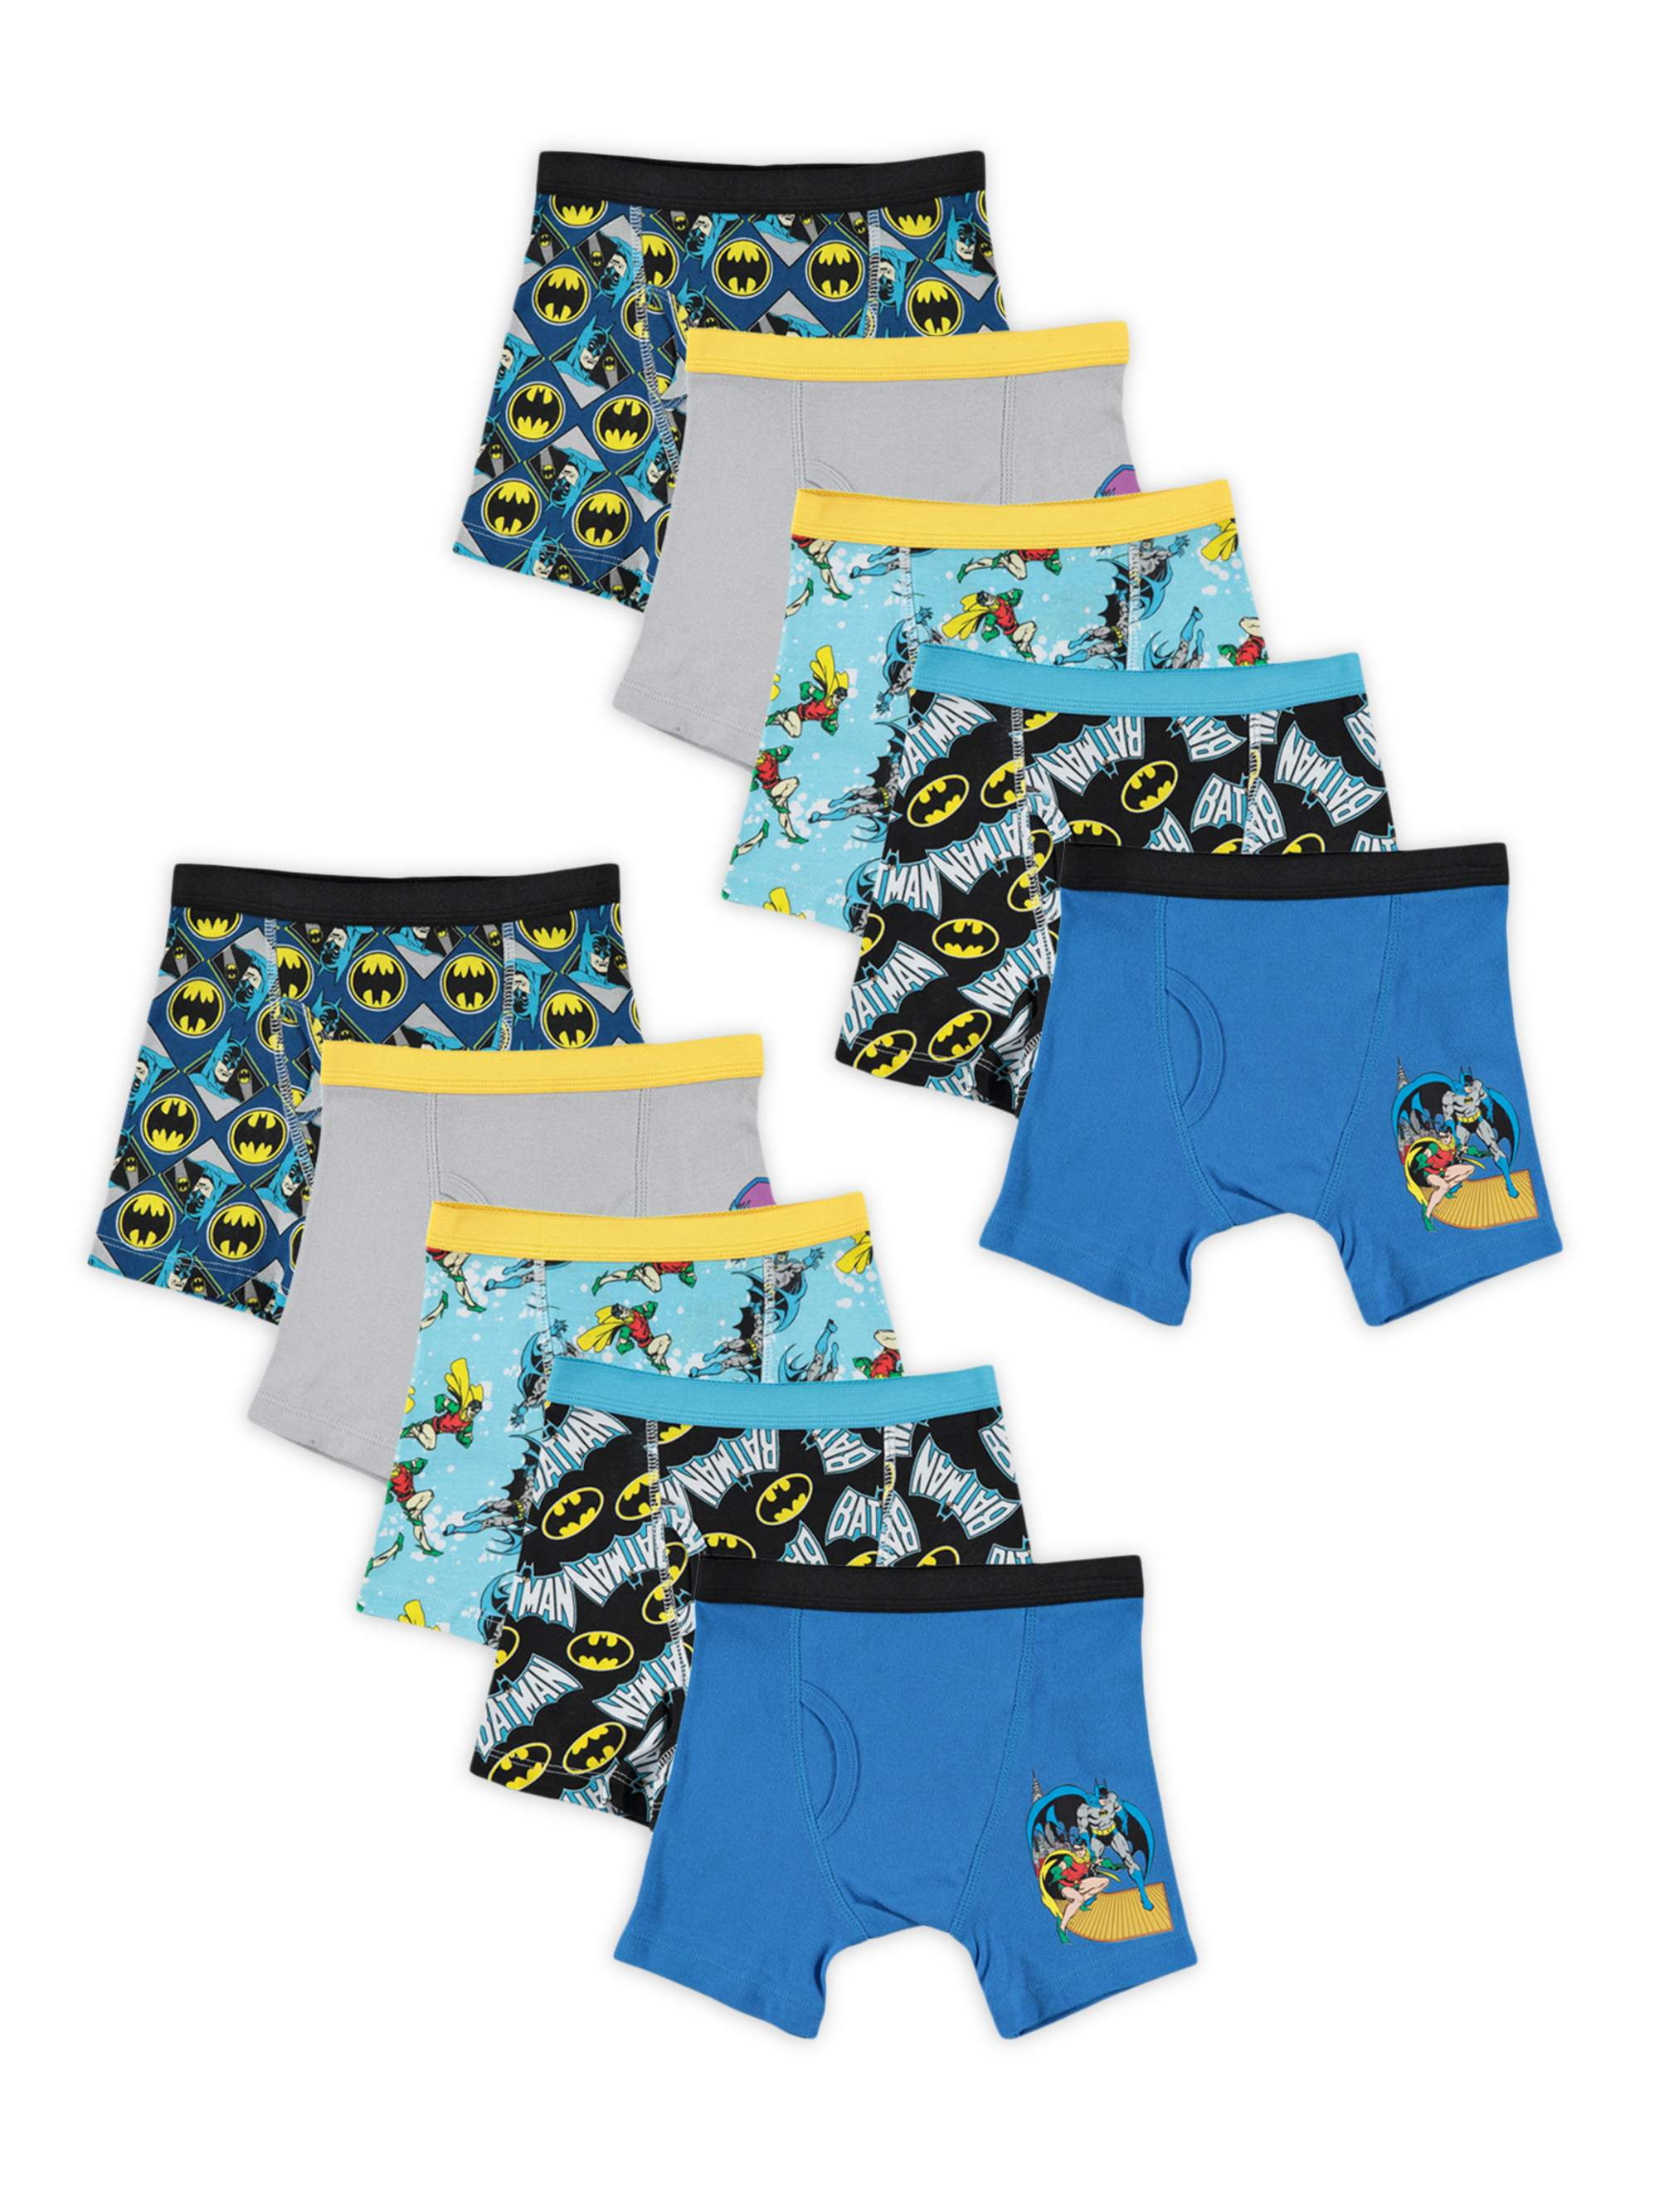 Batman Boys Underwear, 10 Pack Boxer Briefs Sizes 4 - 8 